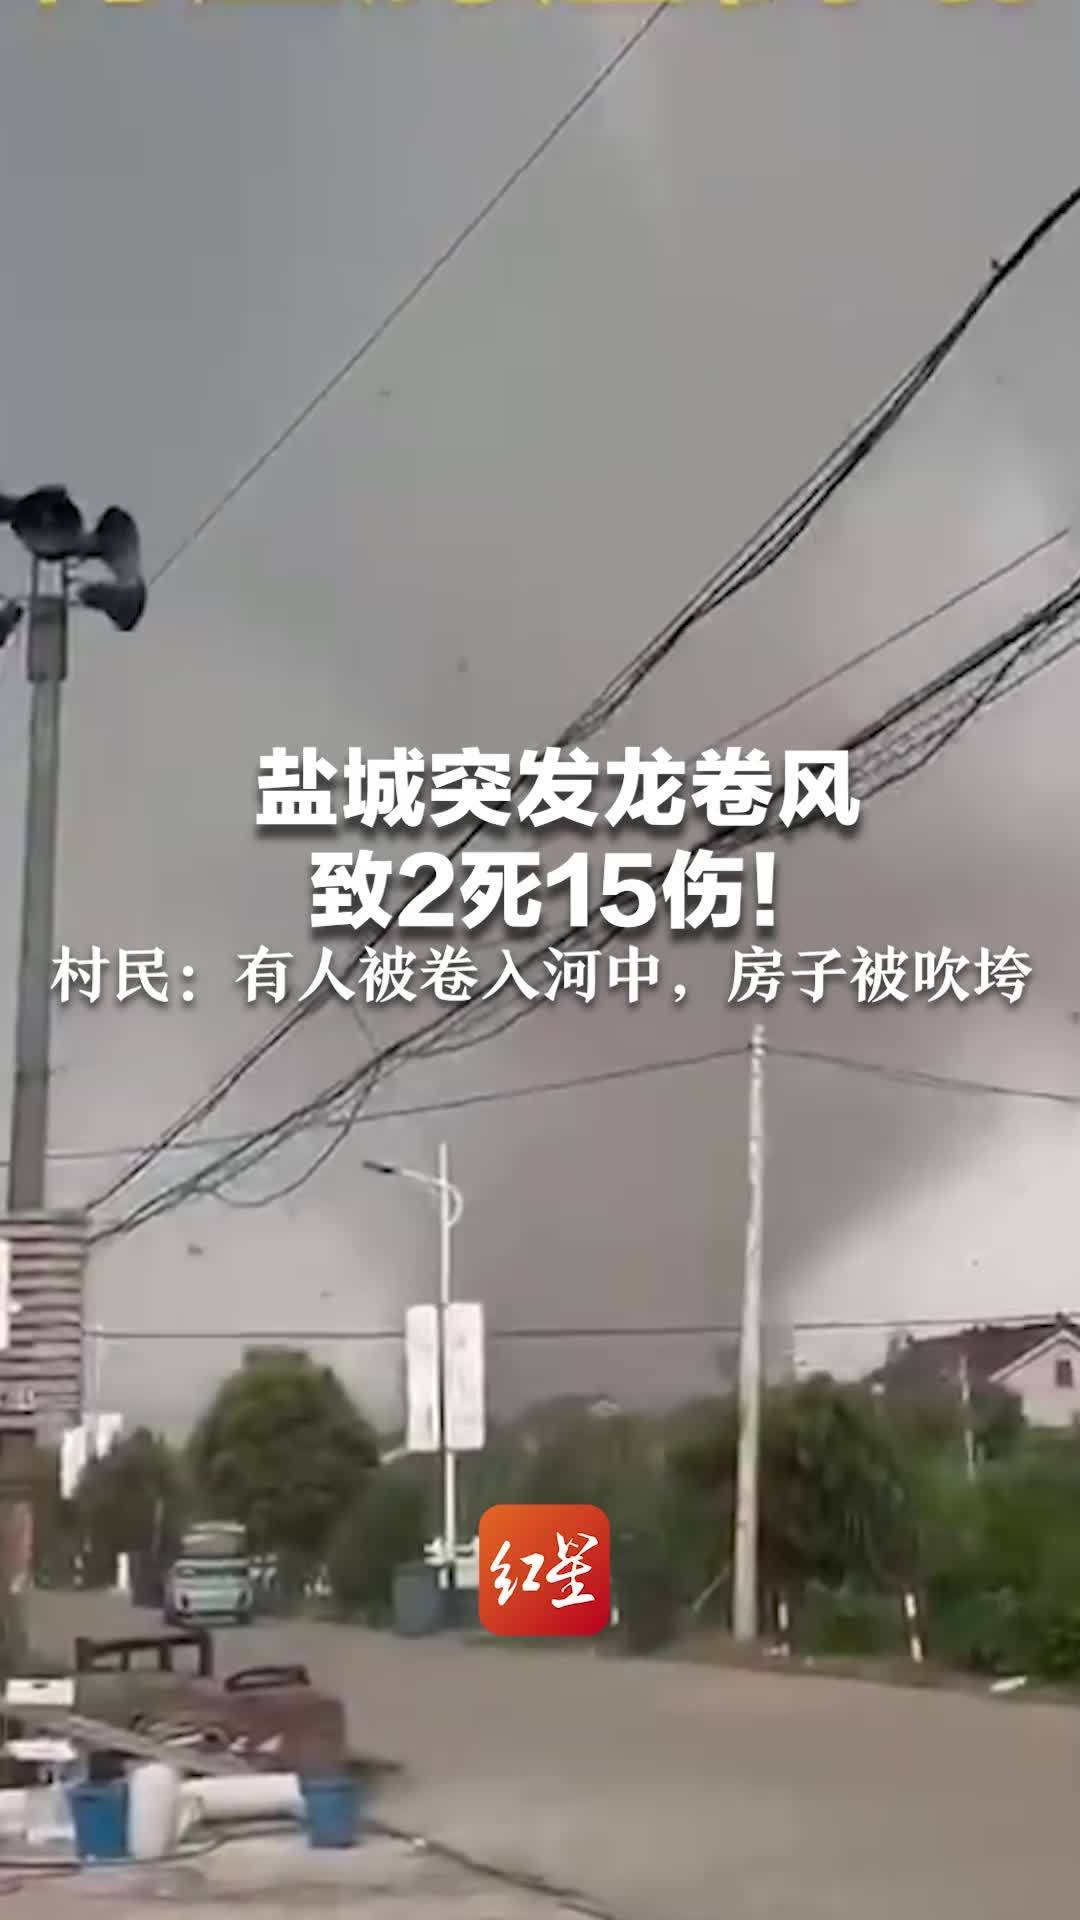 江苏苏州龙卷风致4死149伤，电力部门正紧急抢修电路-新闻频道-和讯网